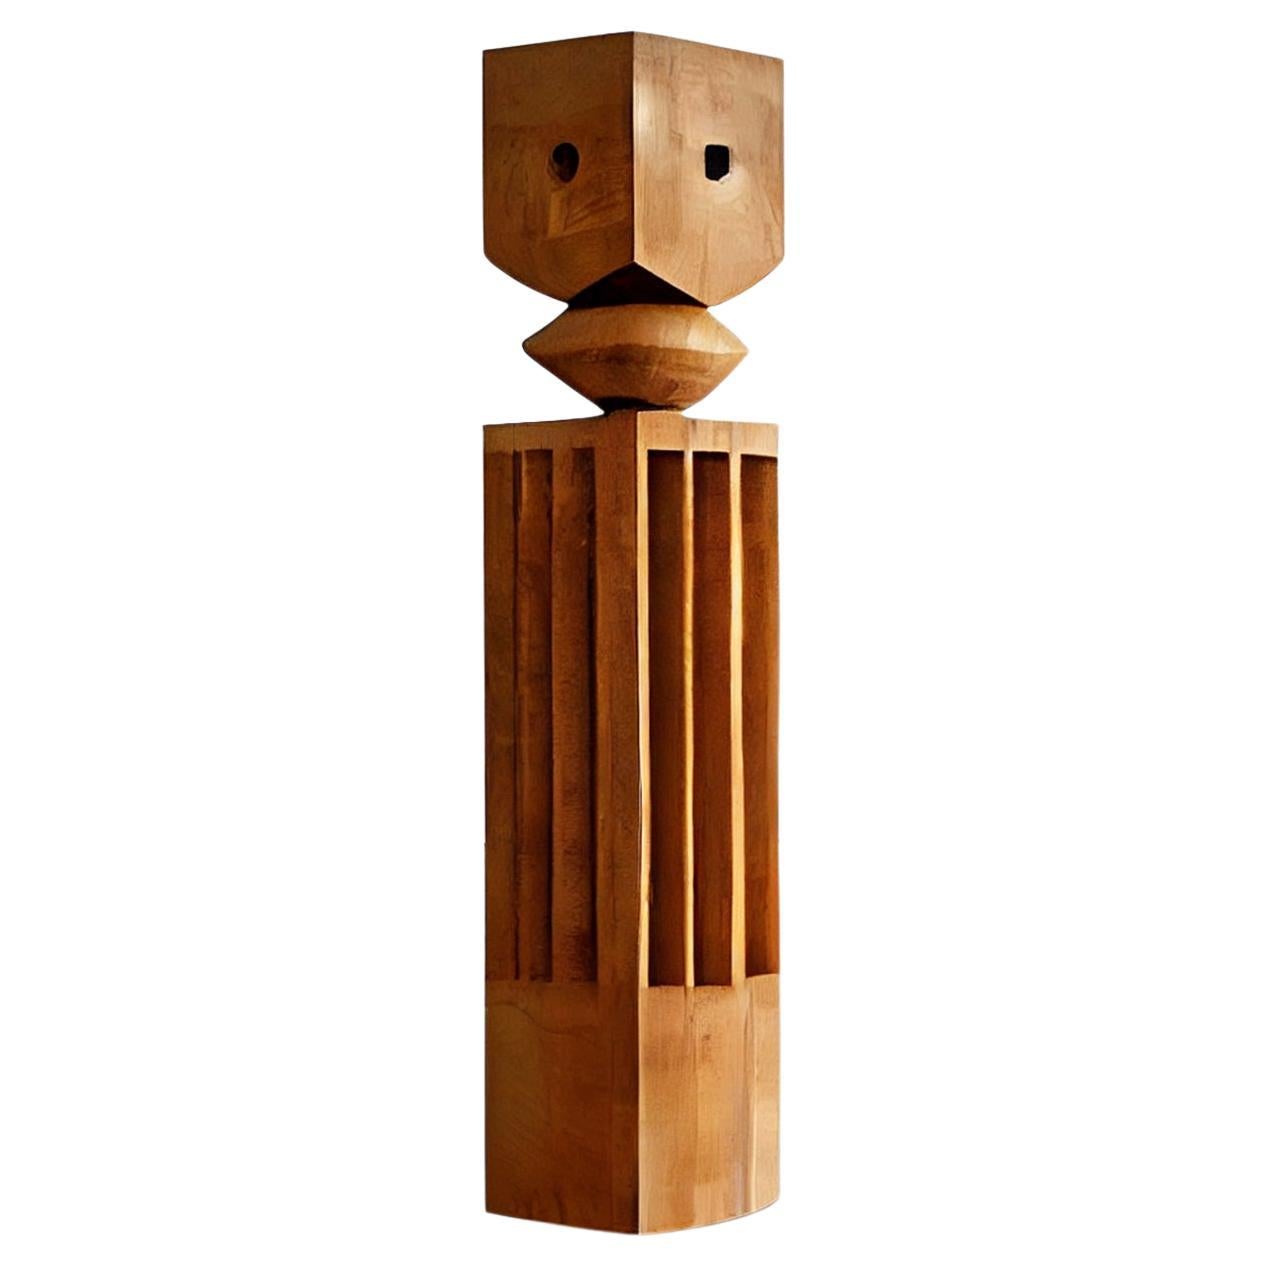 Sculpture figurative en bois inspirée de l'art de Constantin Brancusi, 3 Kings by NONO C.